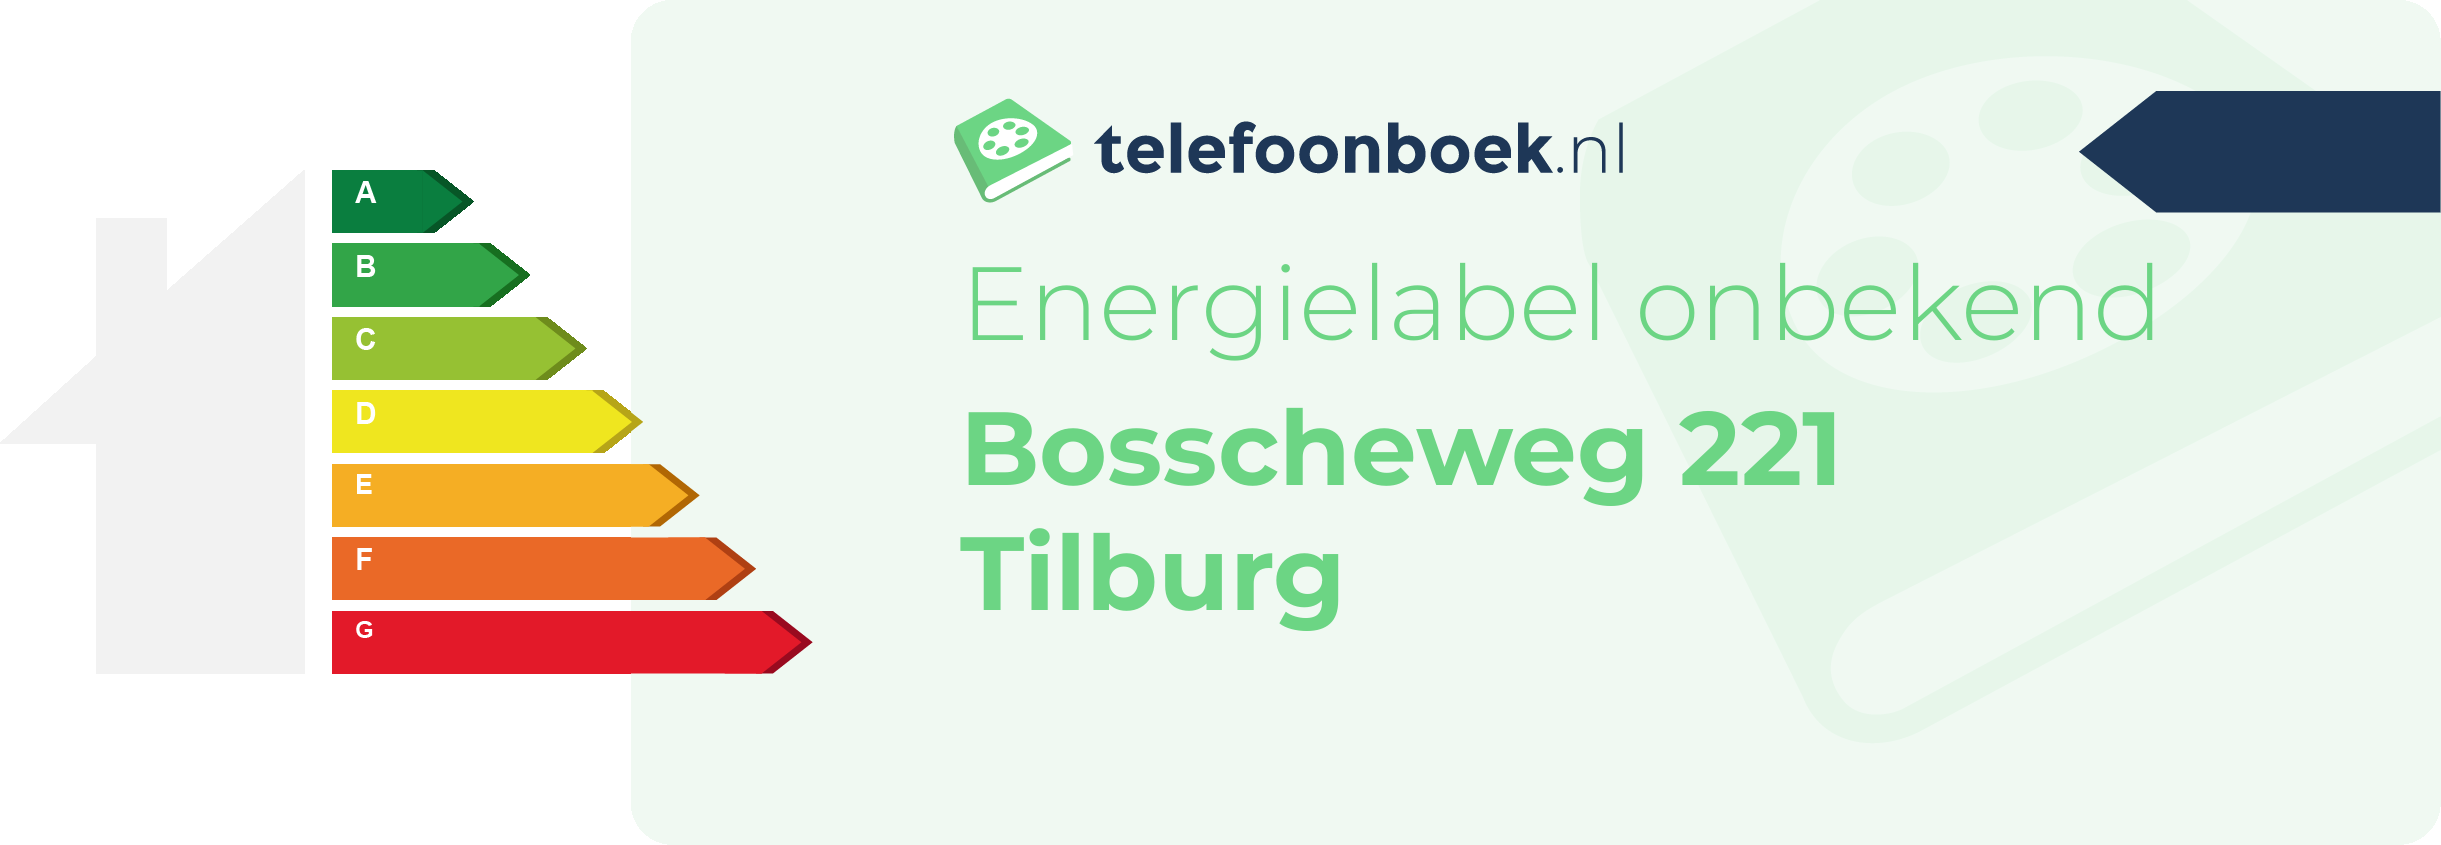 Energielabel Bosscheweg 221 Tilburg